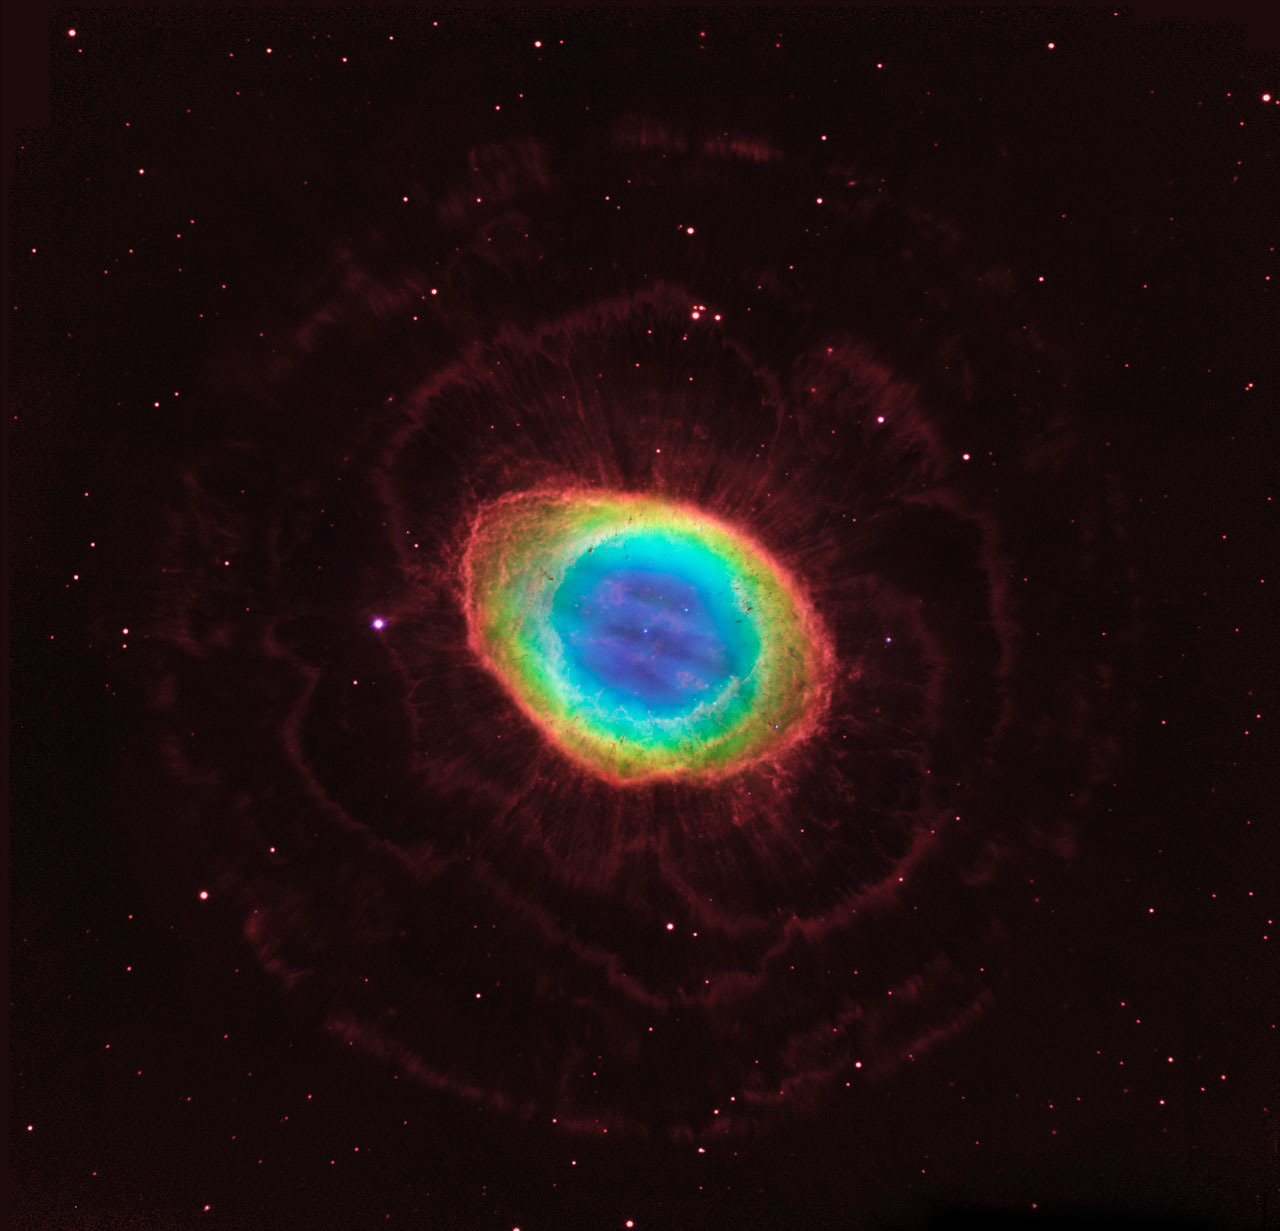 天琴座环状星云m57,由哈勃拍摄 